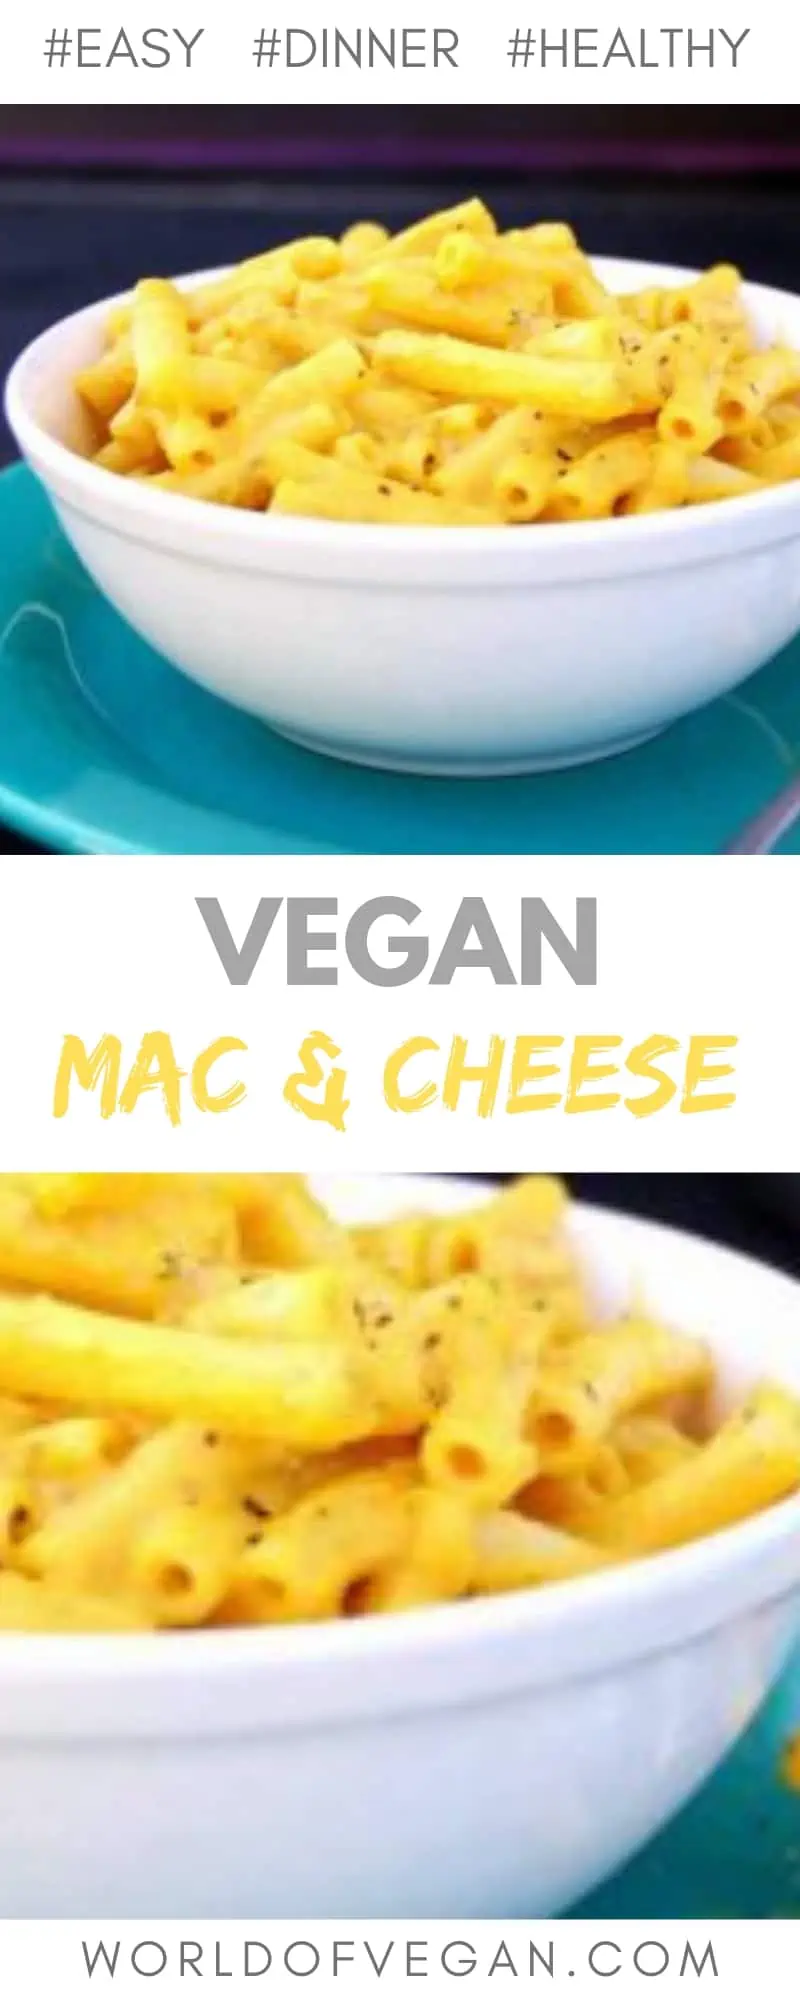 Easy Vegan Mac & Cheese Recipe | World of Vegan | #macandcheese #vegan #dinner #recipe #worldofvegan